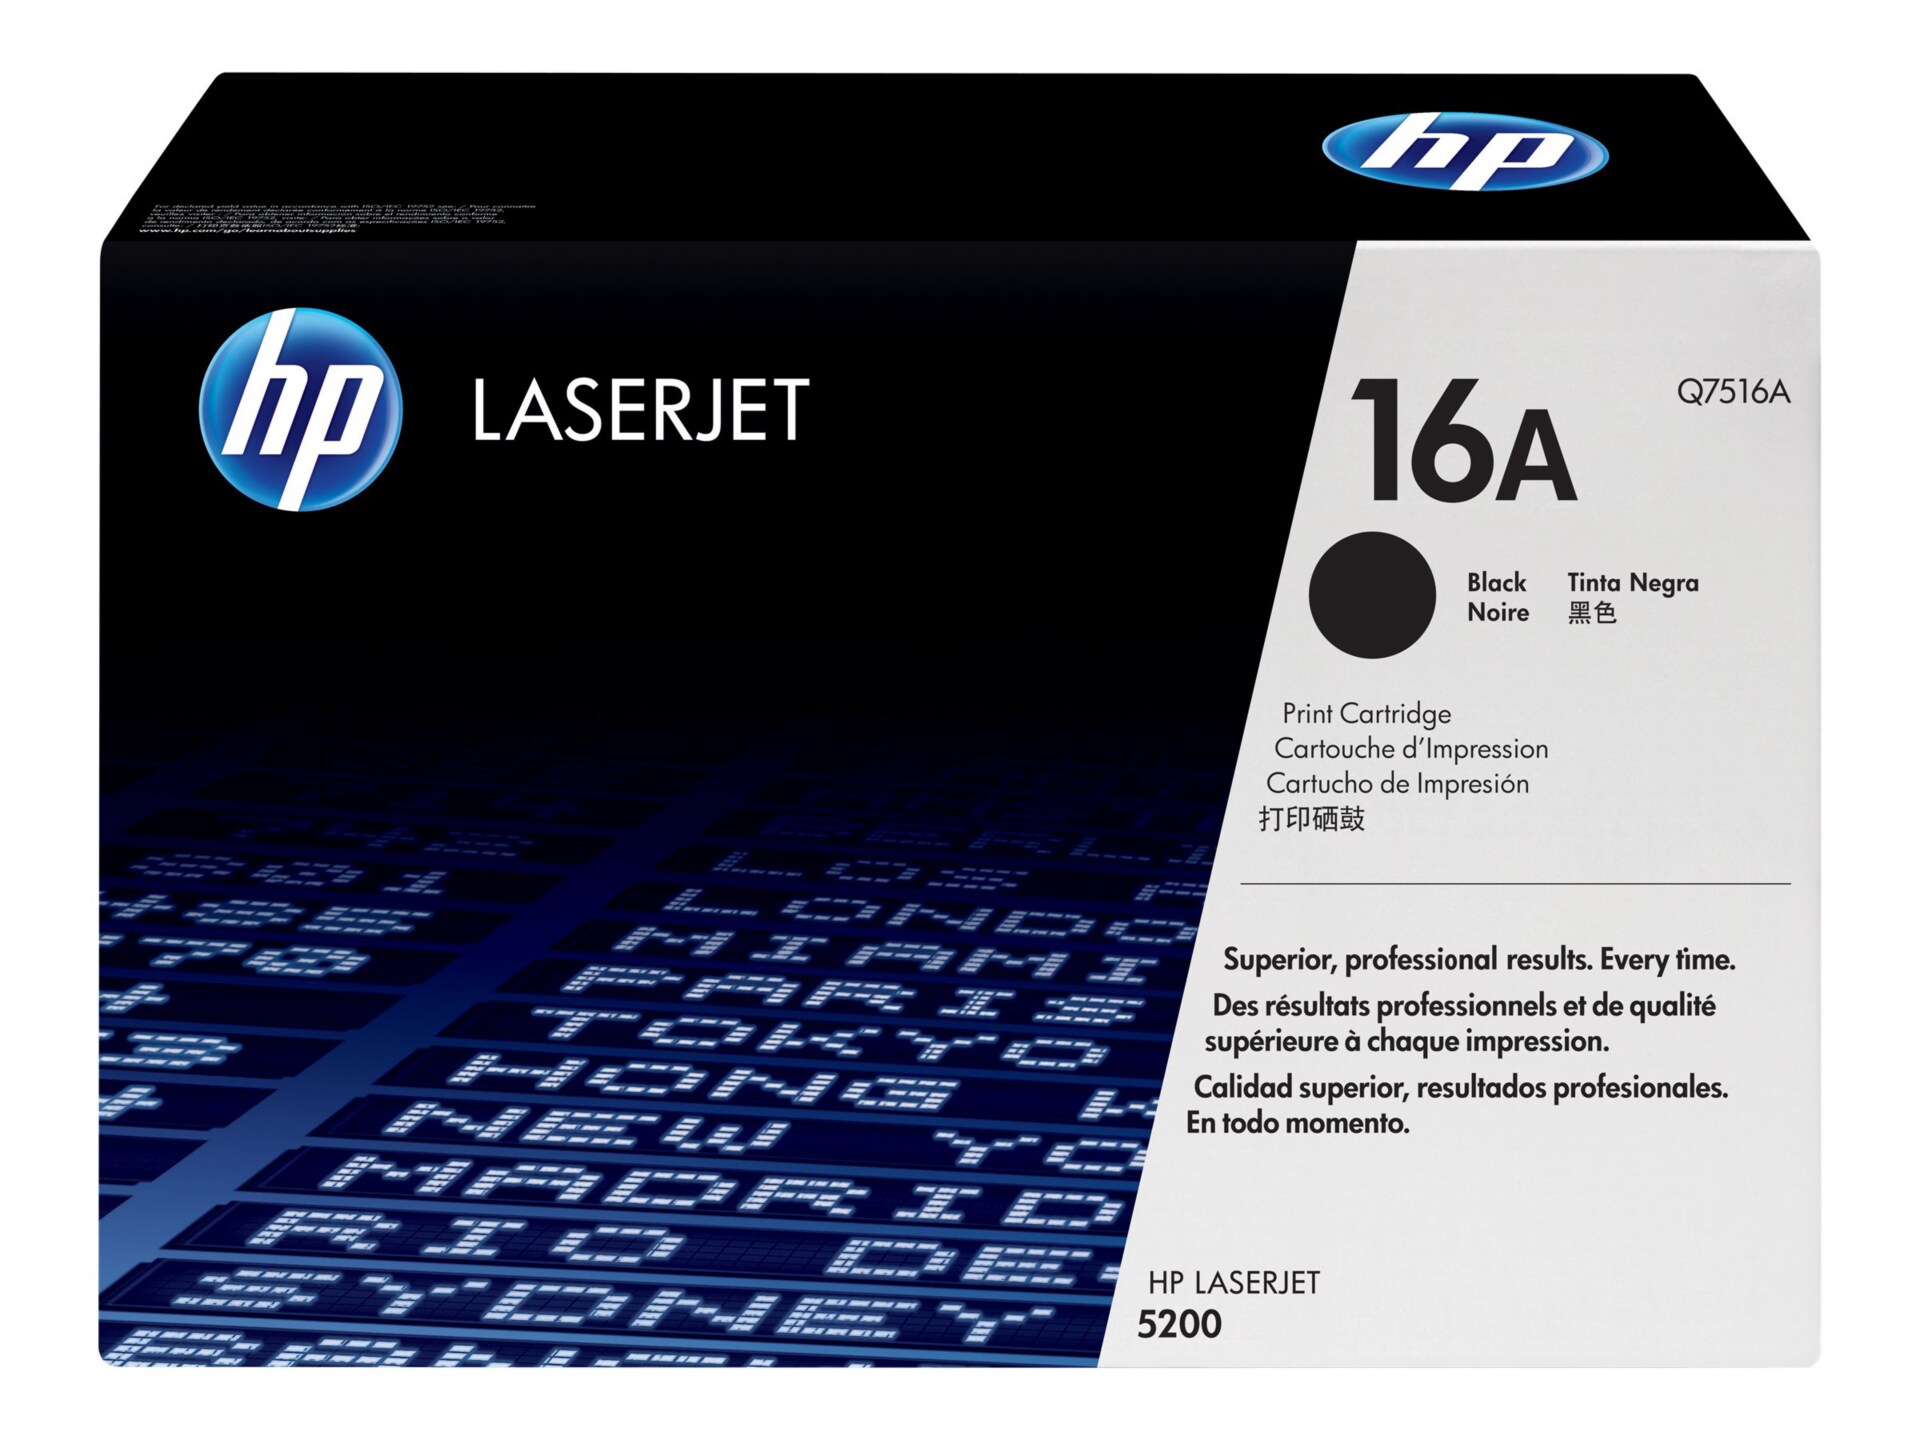 HP LaserJet Q7516A Black Toner Cartridge